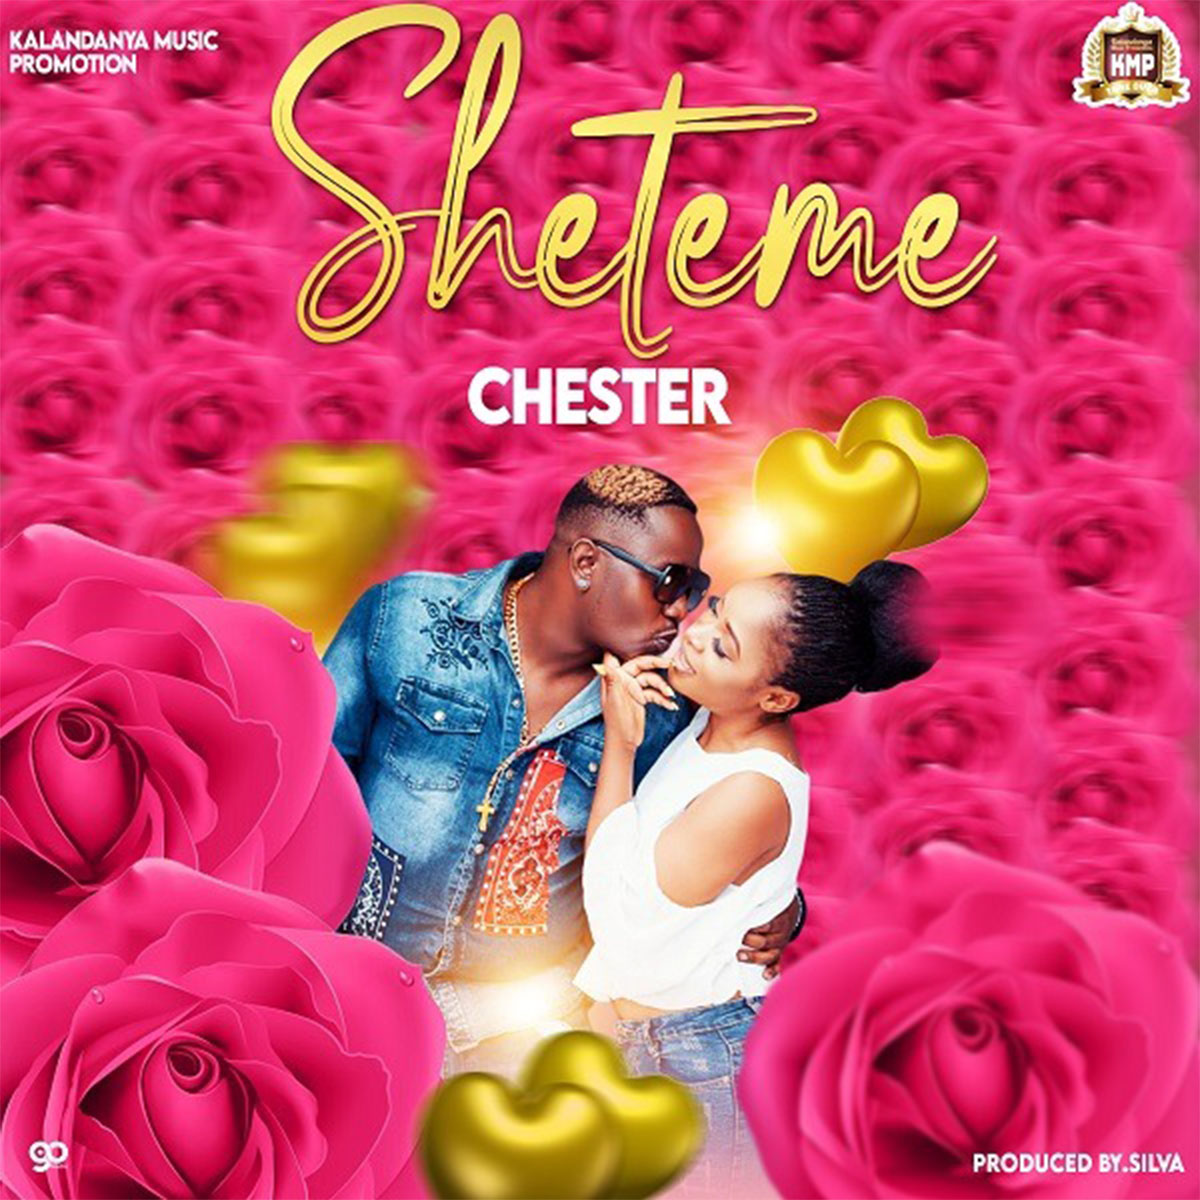 Chester - Sheteme (Prod. Silva)